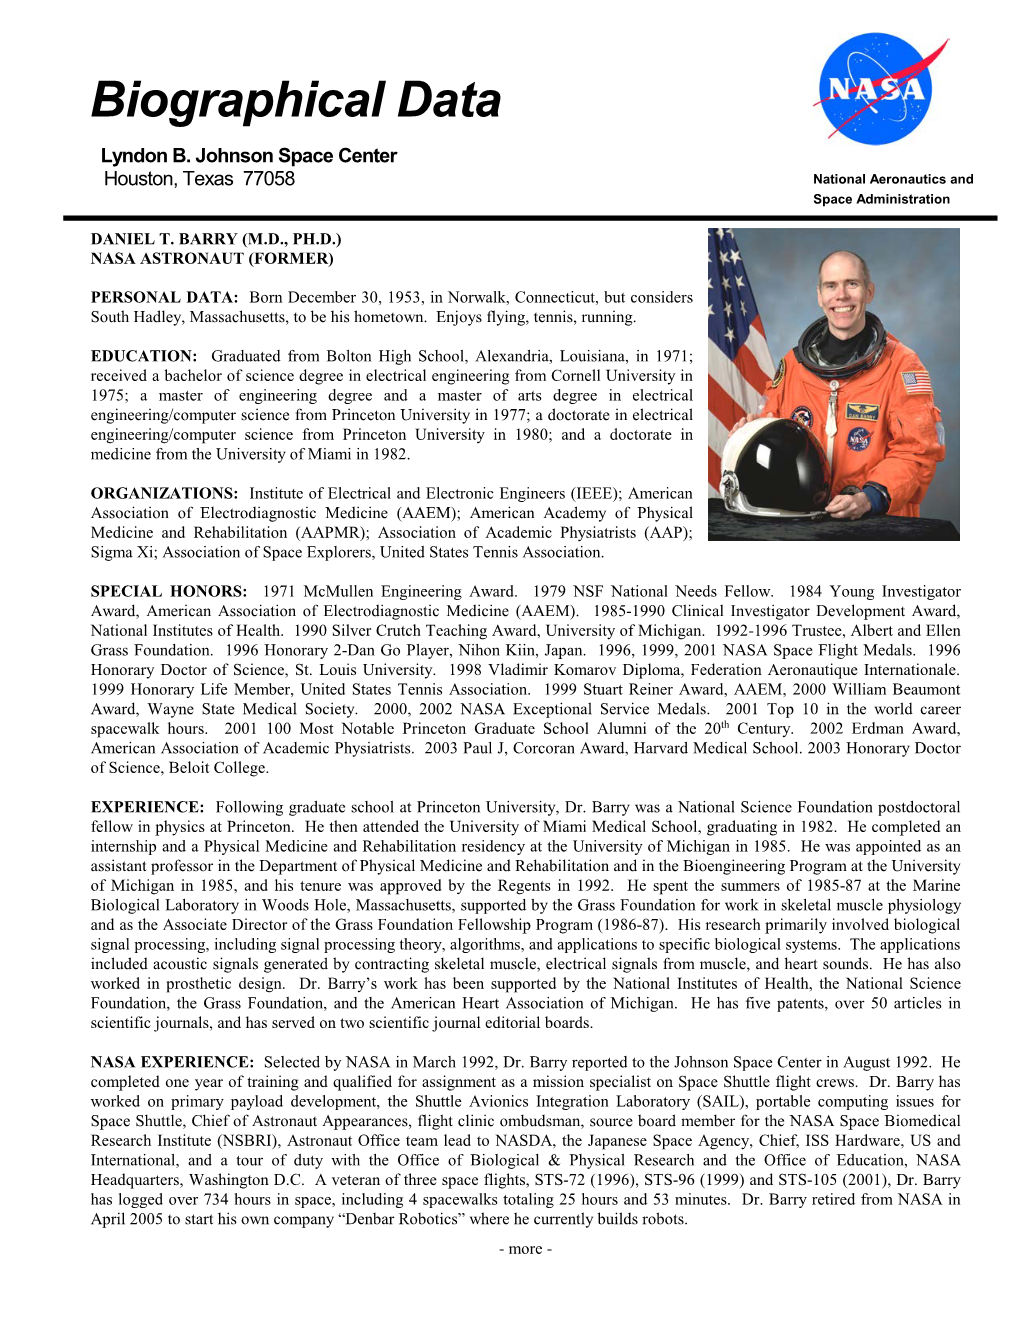 Daniel T. Barry (M.D., Ph.D.) Nasa Astronaut (Former)